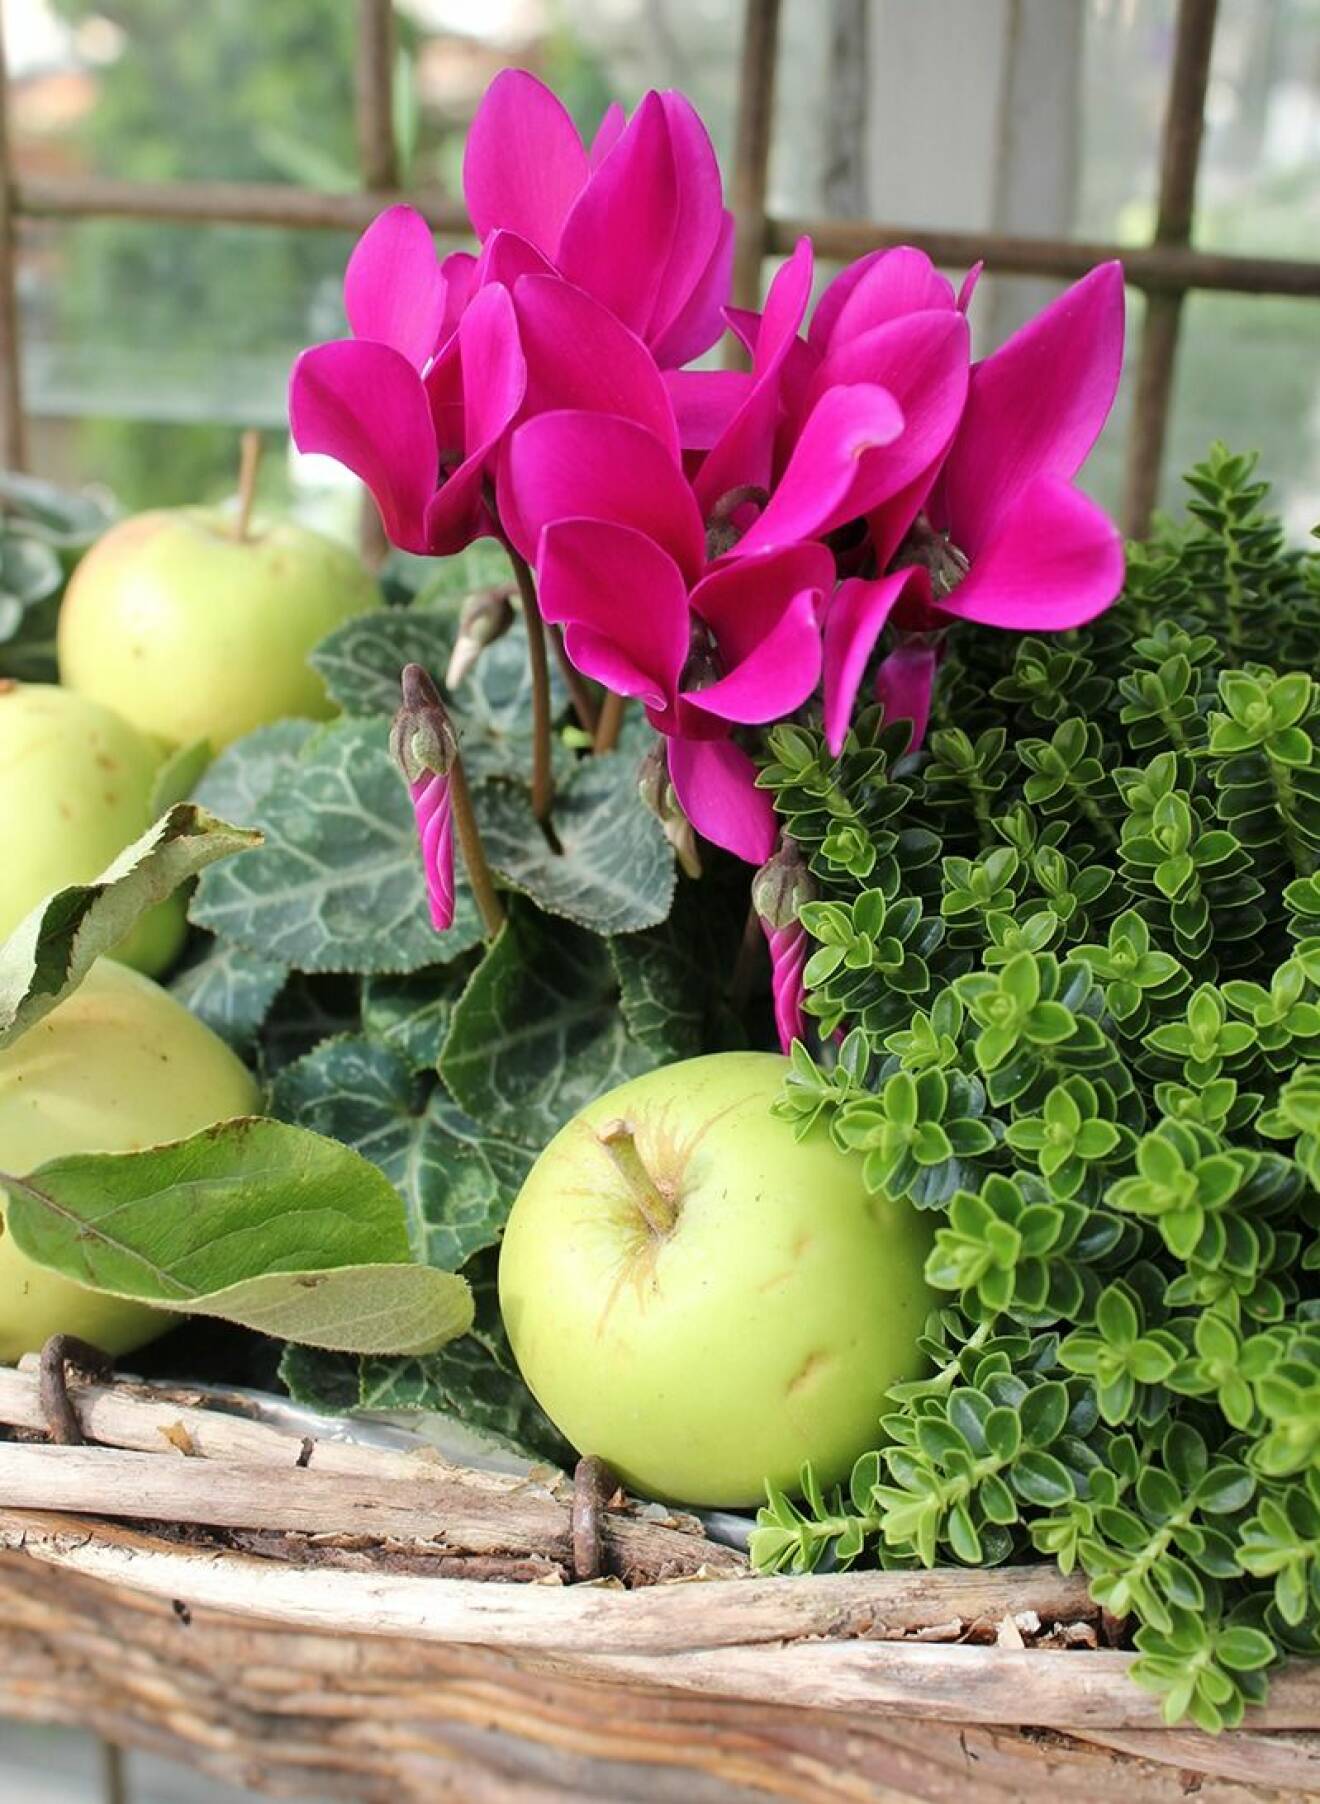 Sött i höst! Den gröna heben har planterats med en rosa cyklamen. Tåliga bra växter båda två. Dekorera med äpplen från trädgården.